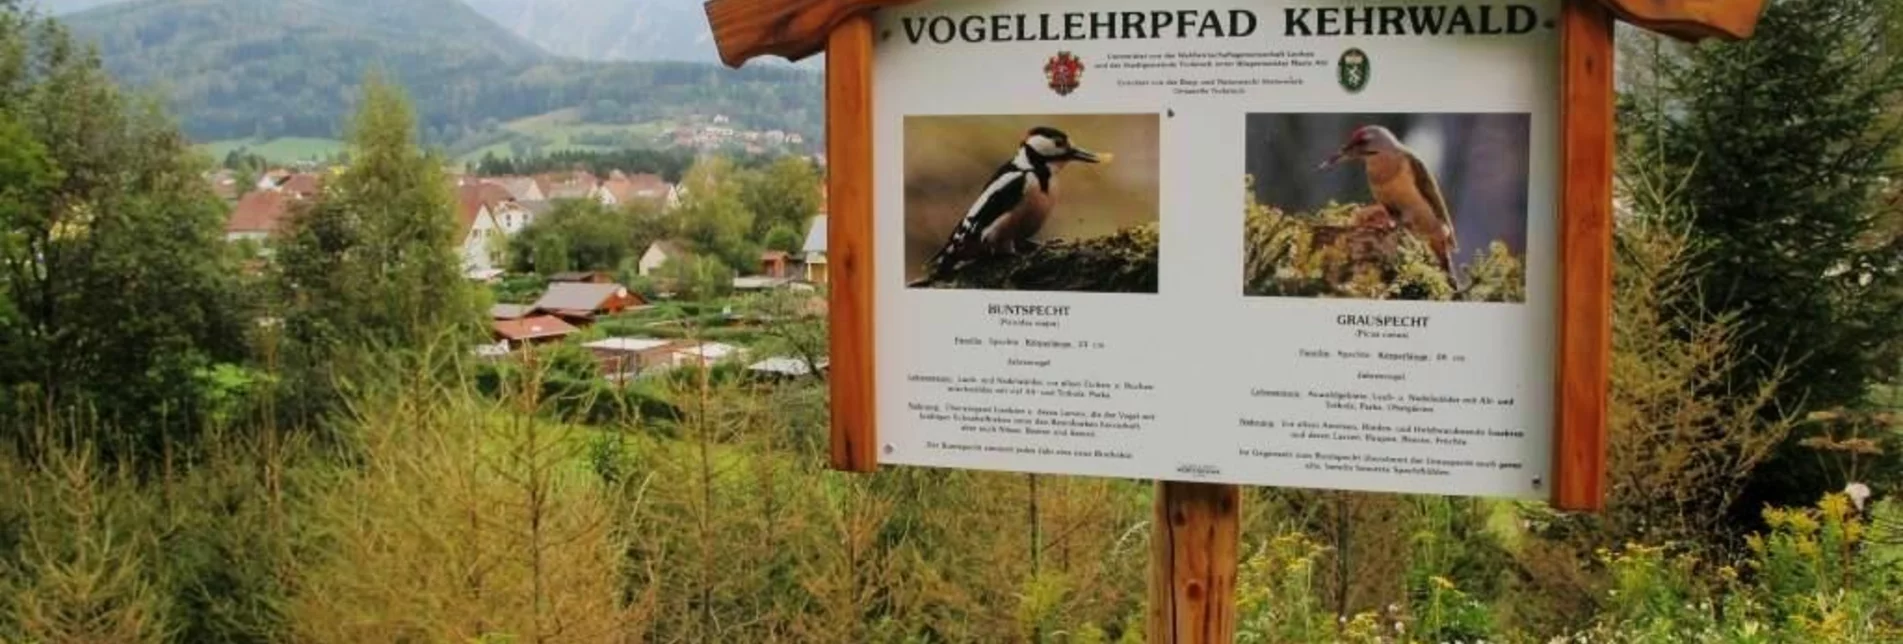 Themen- und Lehrpfad Vogellehrpfad Kehrwald - Touren-Impression #1 | © TV Erzberg Leoben